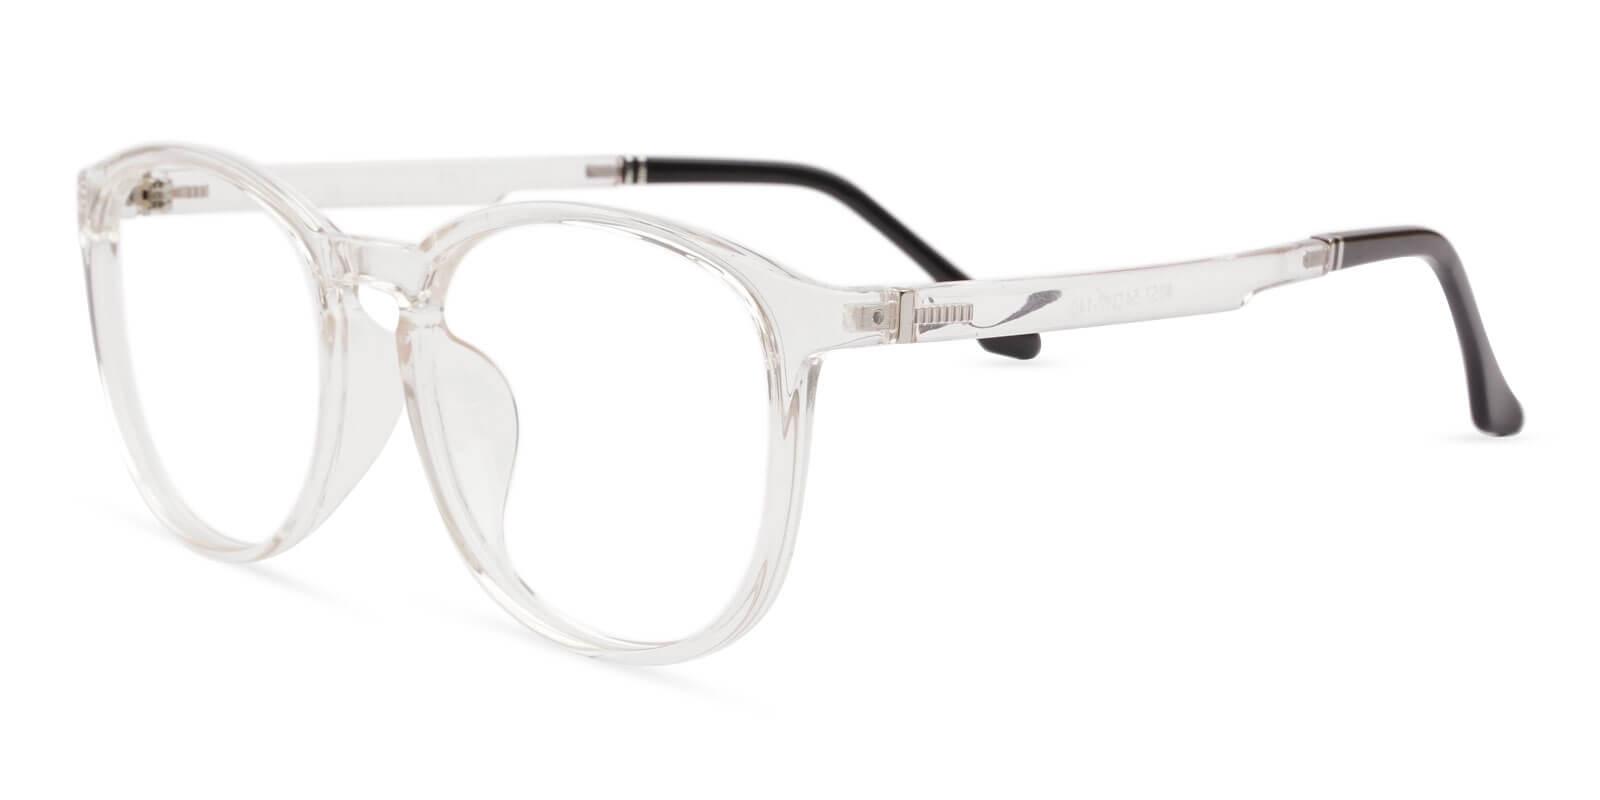 Hailey Fclear TR Eyeglasses , UniversalBridgeFit Frames from ABBE Glasses